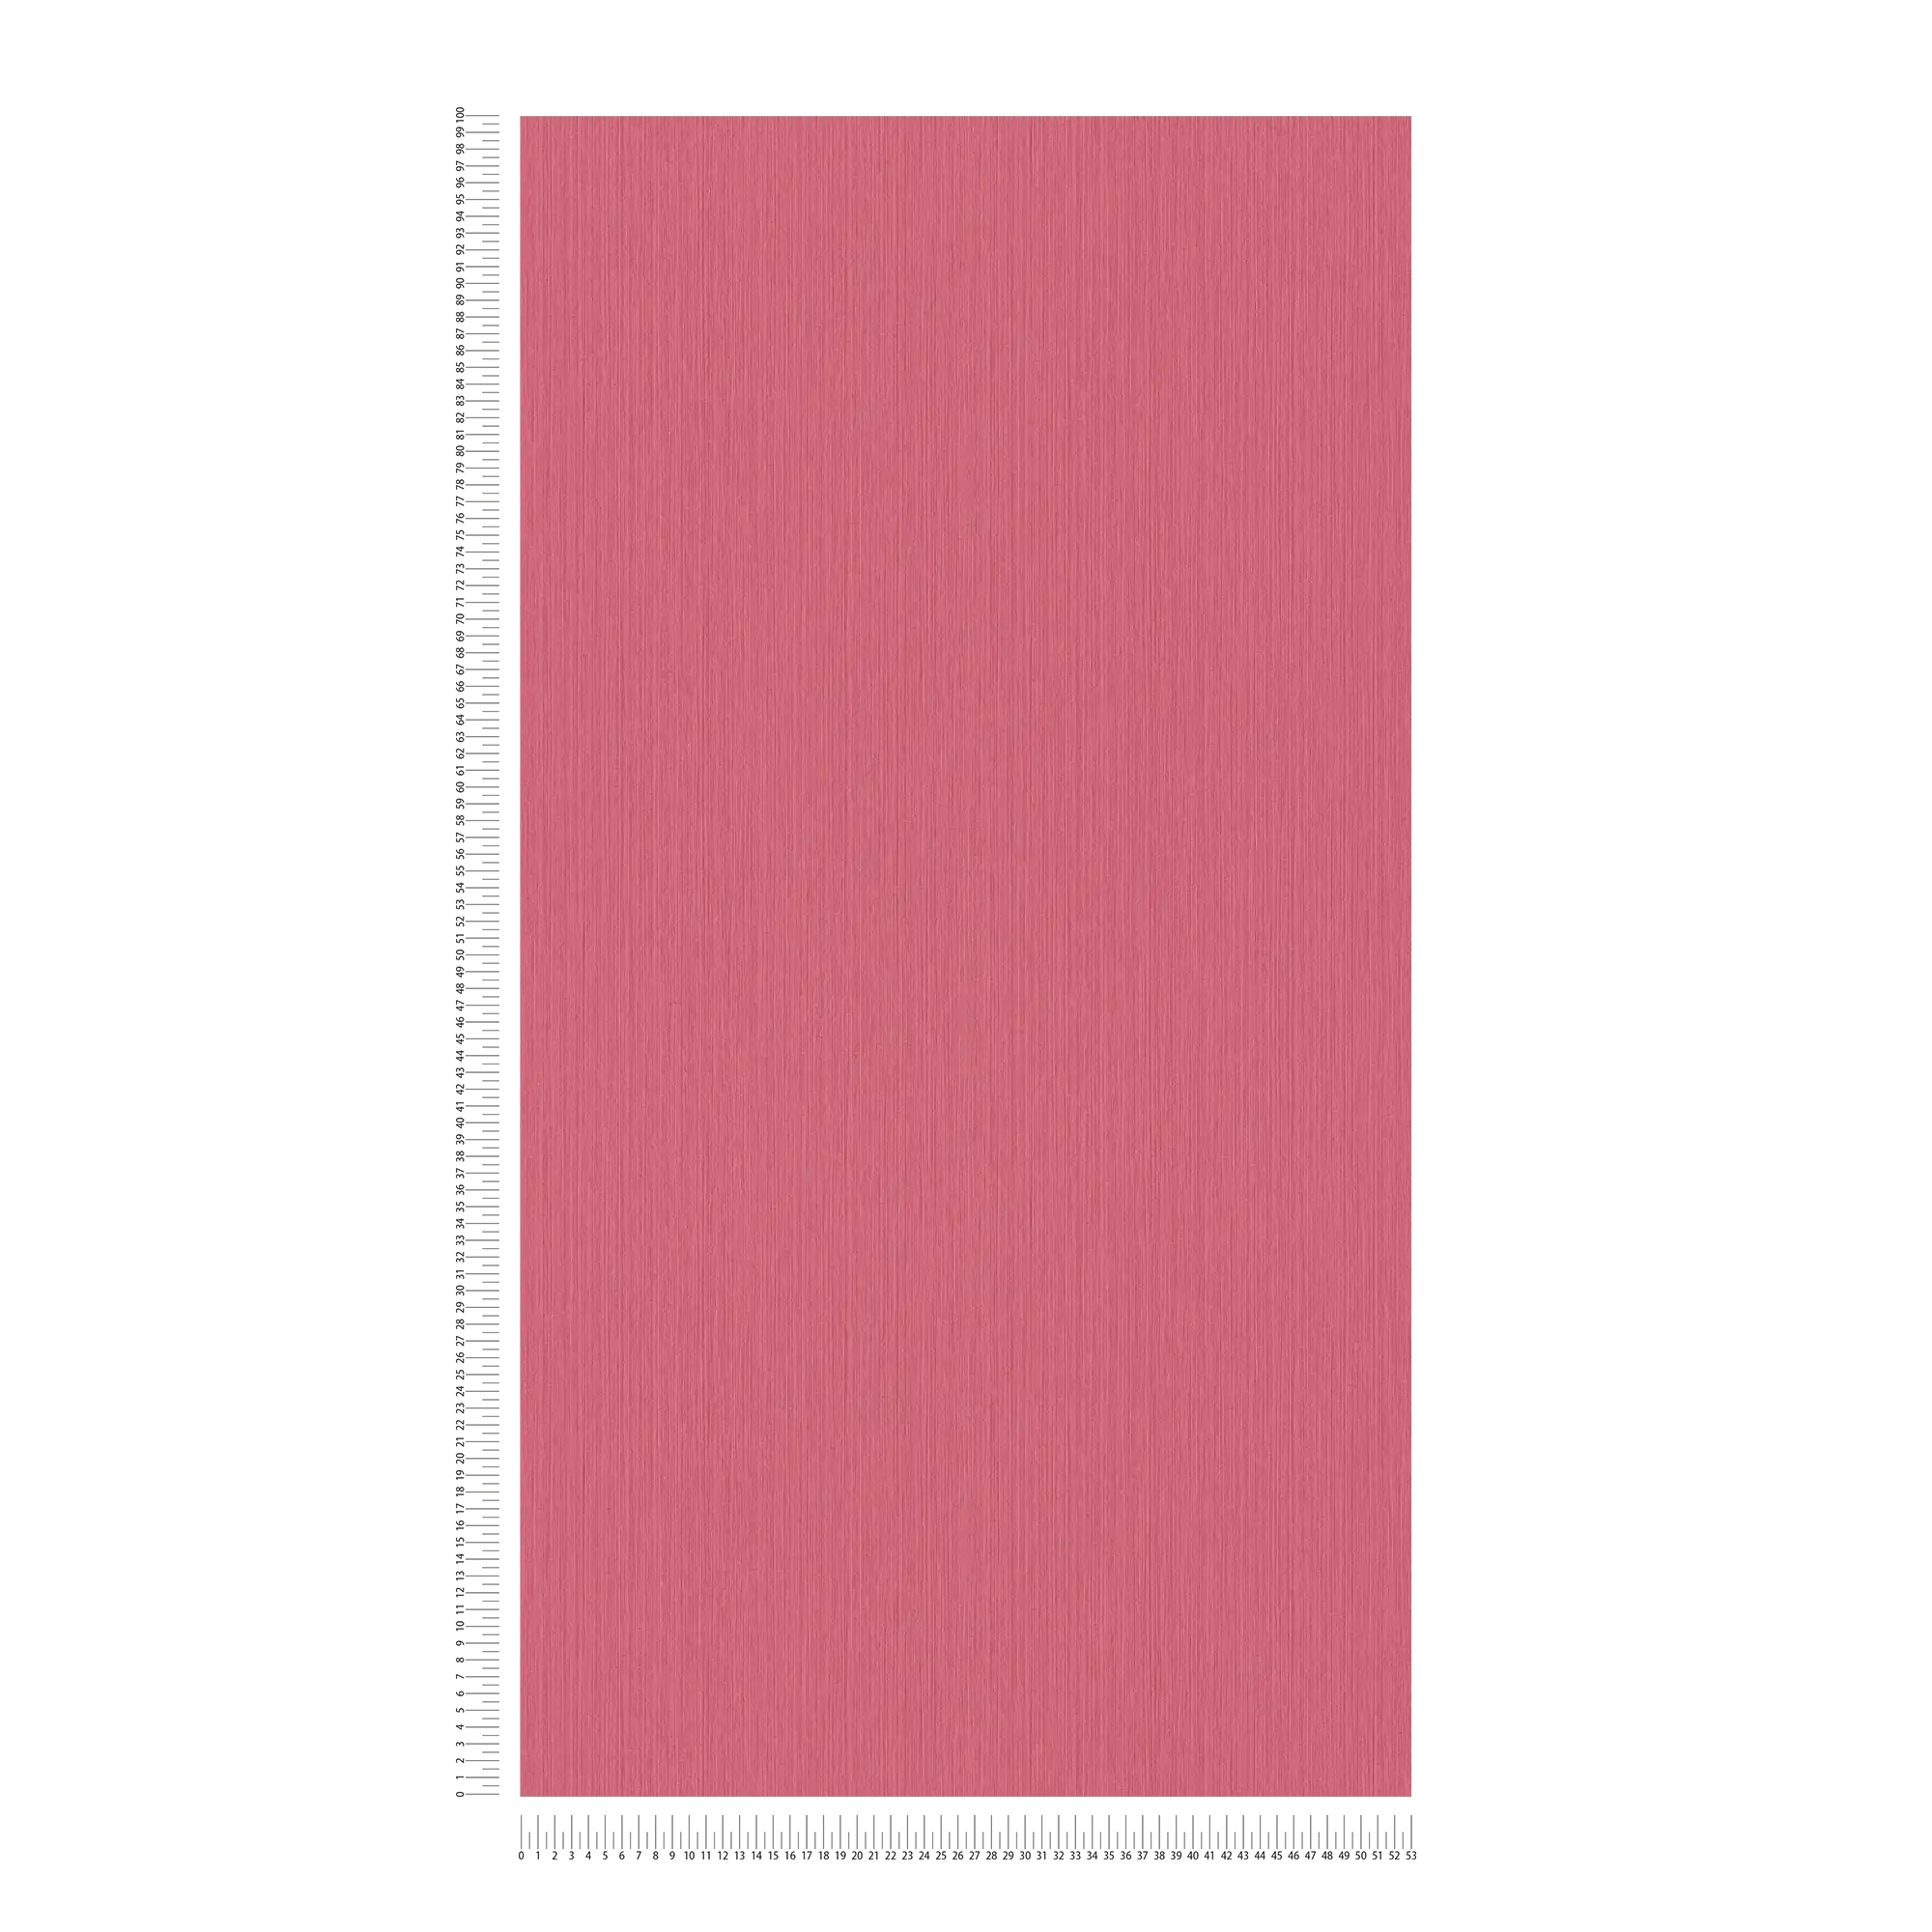             Roze behang met gevlekt textieleffect van MICHALSKY
        